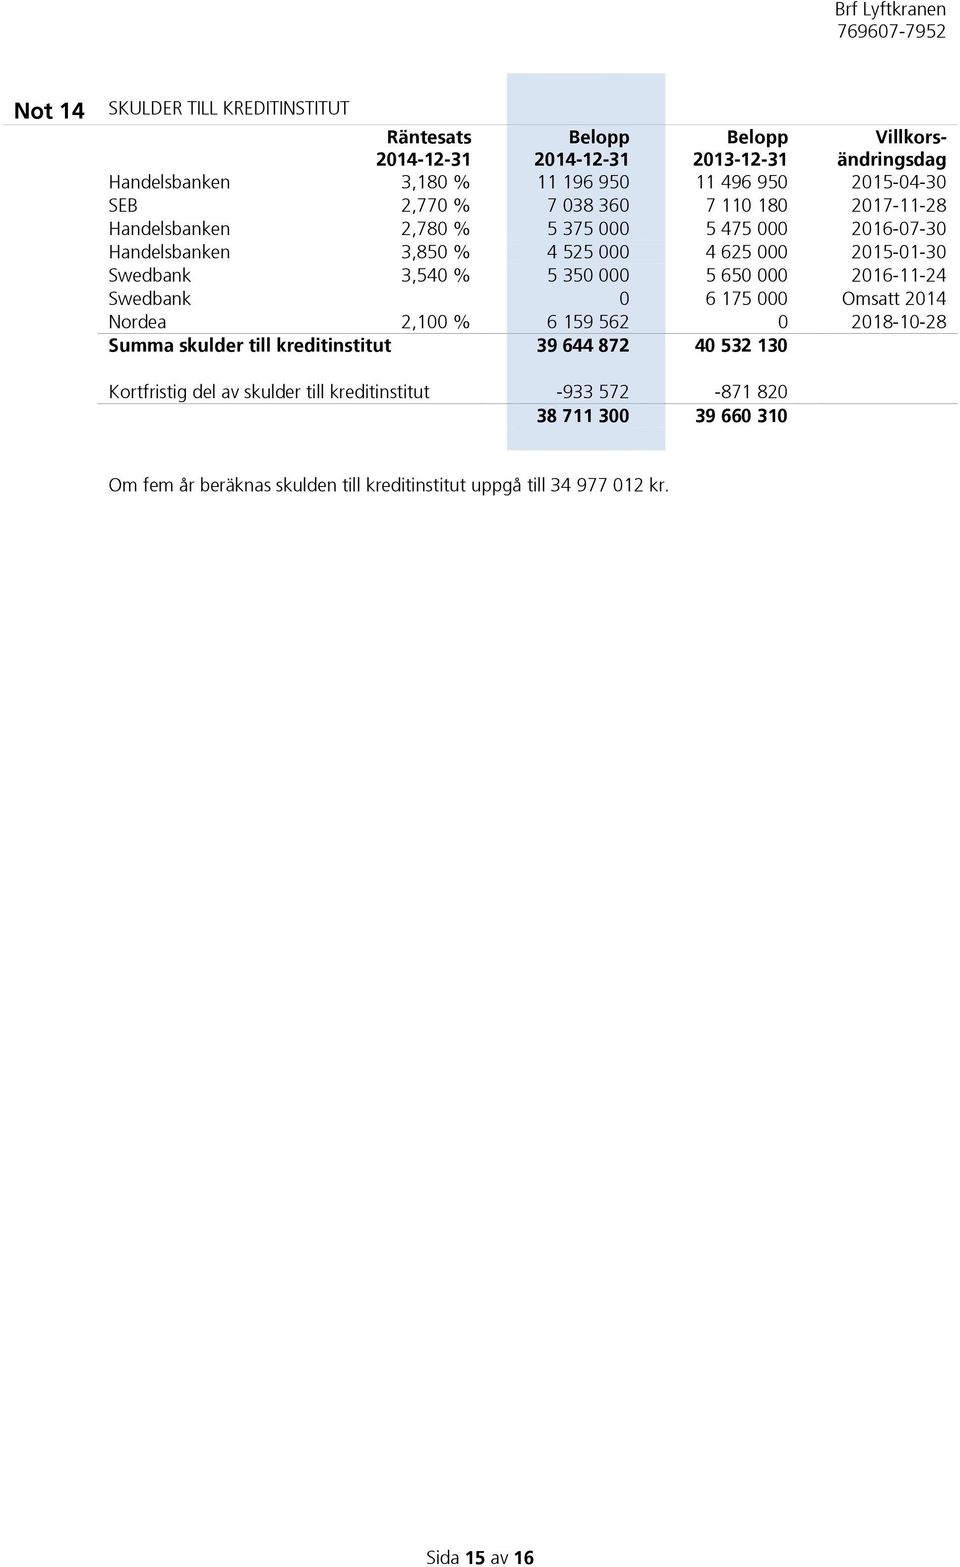 Swedbank 3,540 % 5 350 000 5 650 000 2016-11-24 Swedbank 0 6 175 000 Omsatt 2014 Nordea 2,100 % 6 159 562 0 2018-10-28 Summa skulder till kreditinstitut 39 644 872